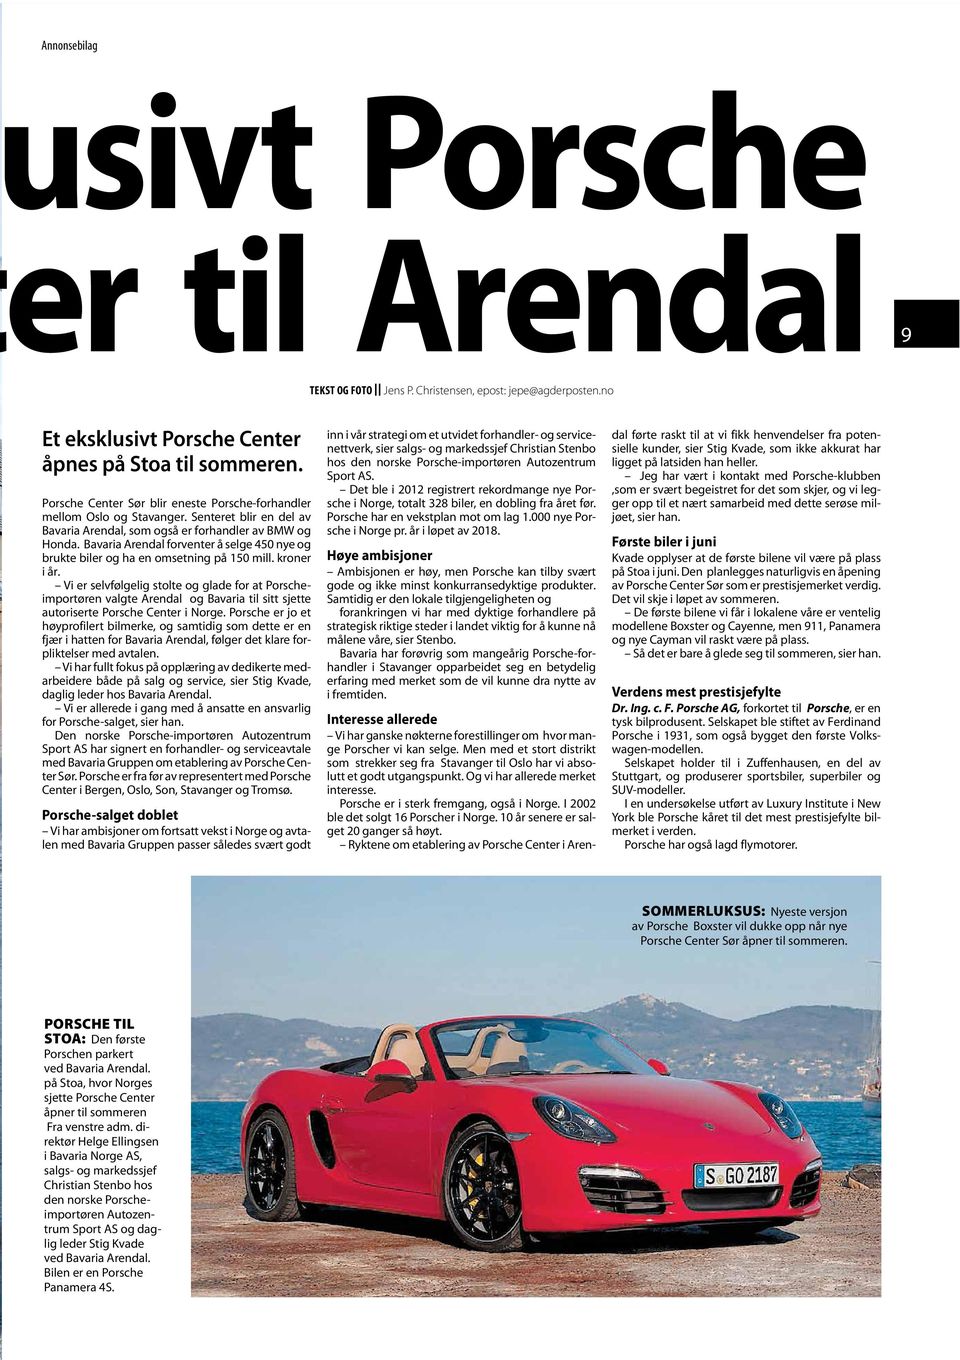 Bavaria Arendal forventer å selge 450 nye og brukte biler og ha en omsetning på 150 mill. kroner i år.